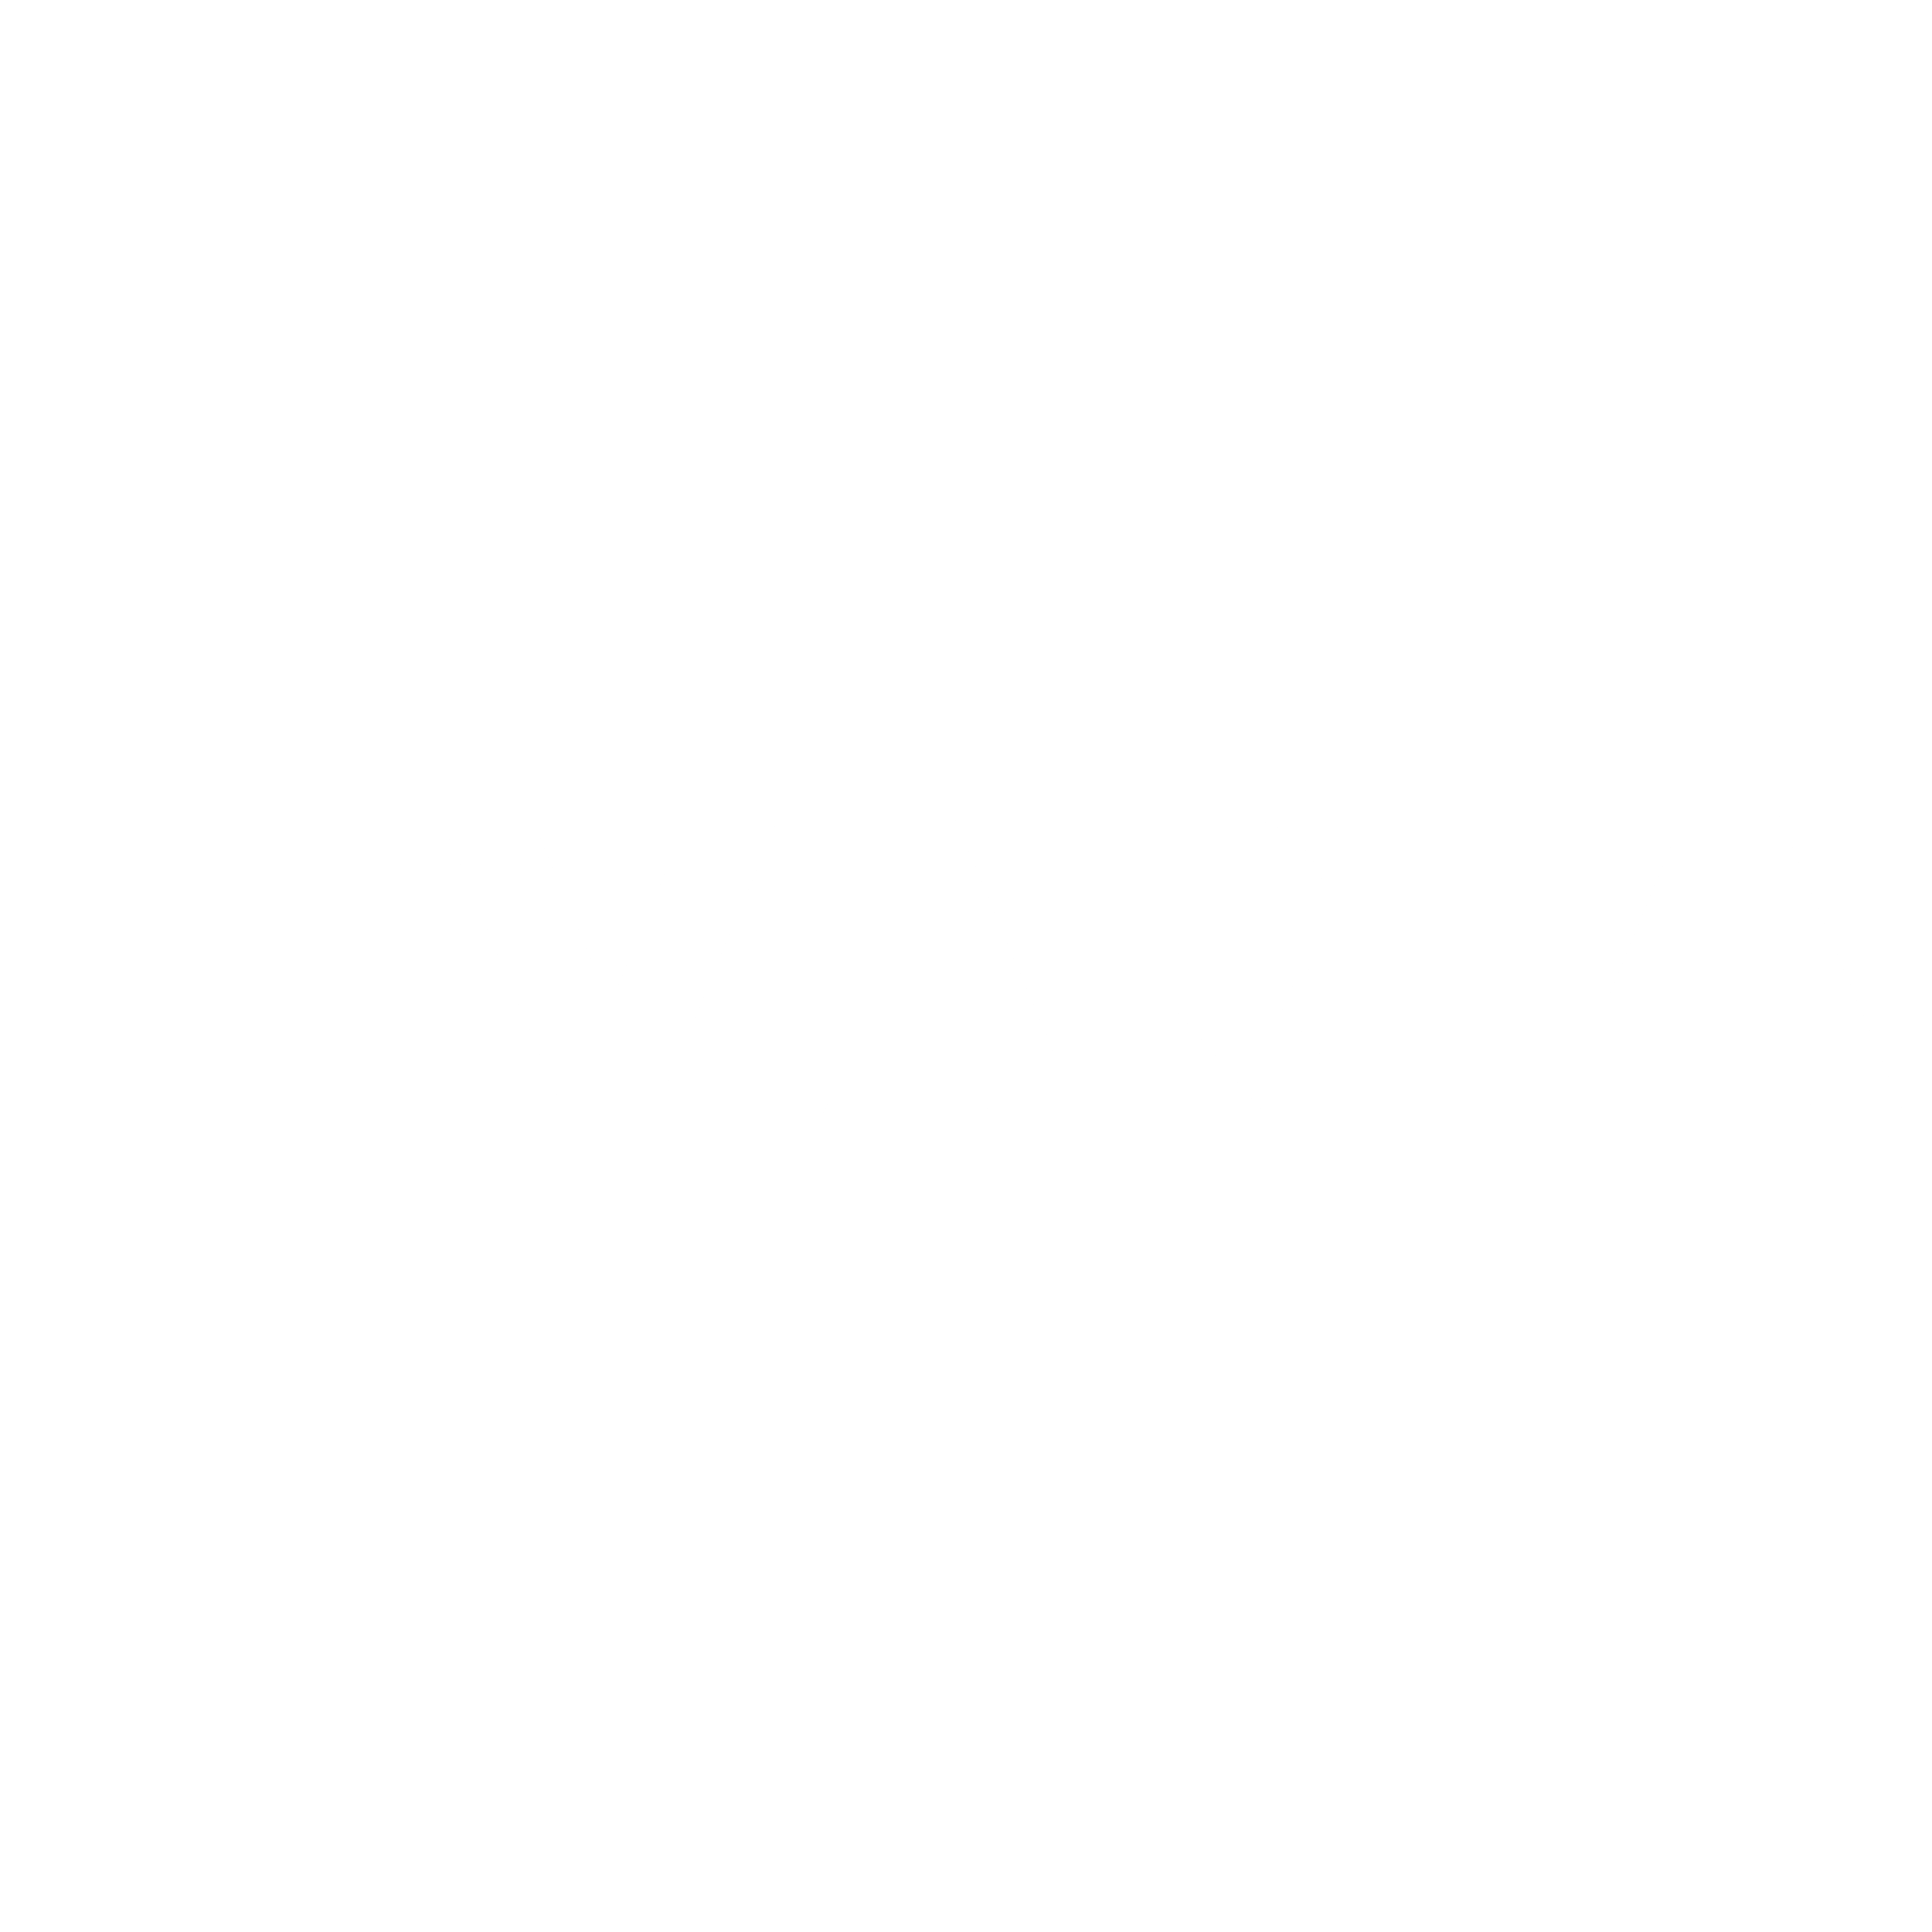 Varta Logo - Varta Logo PNG Transparent & SVG Vector